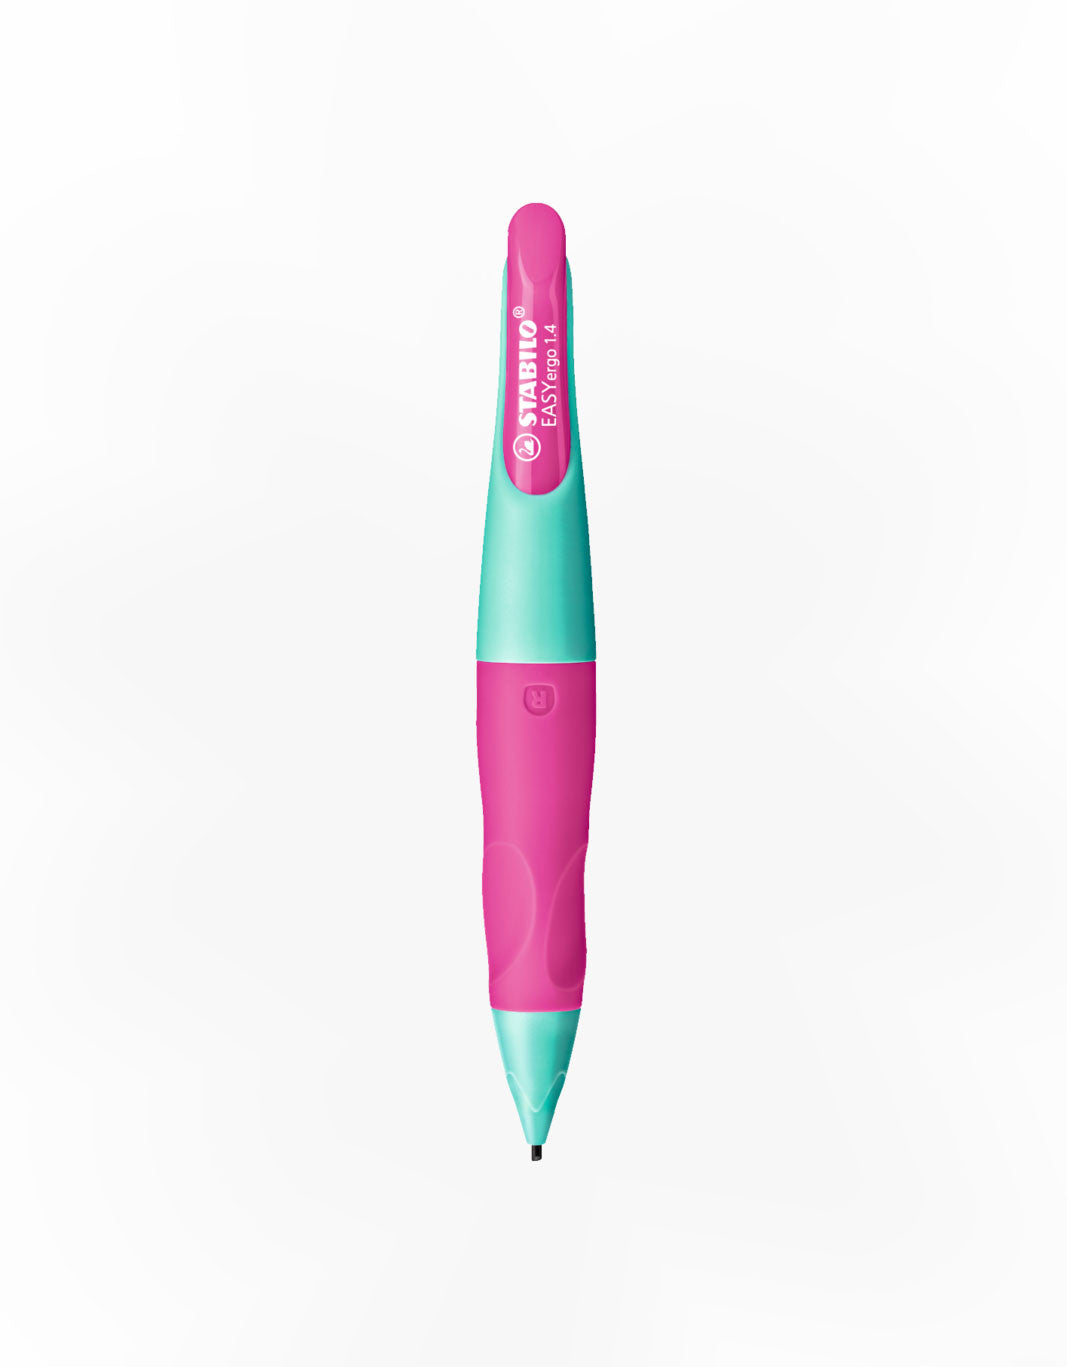 STABILO EASYergo 1.4mm Ergonomic Mechanical Pencil (Right/Left-Hander) Thumbnail